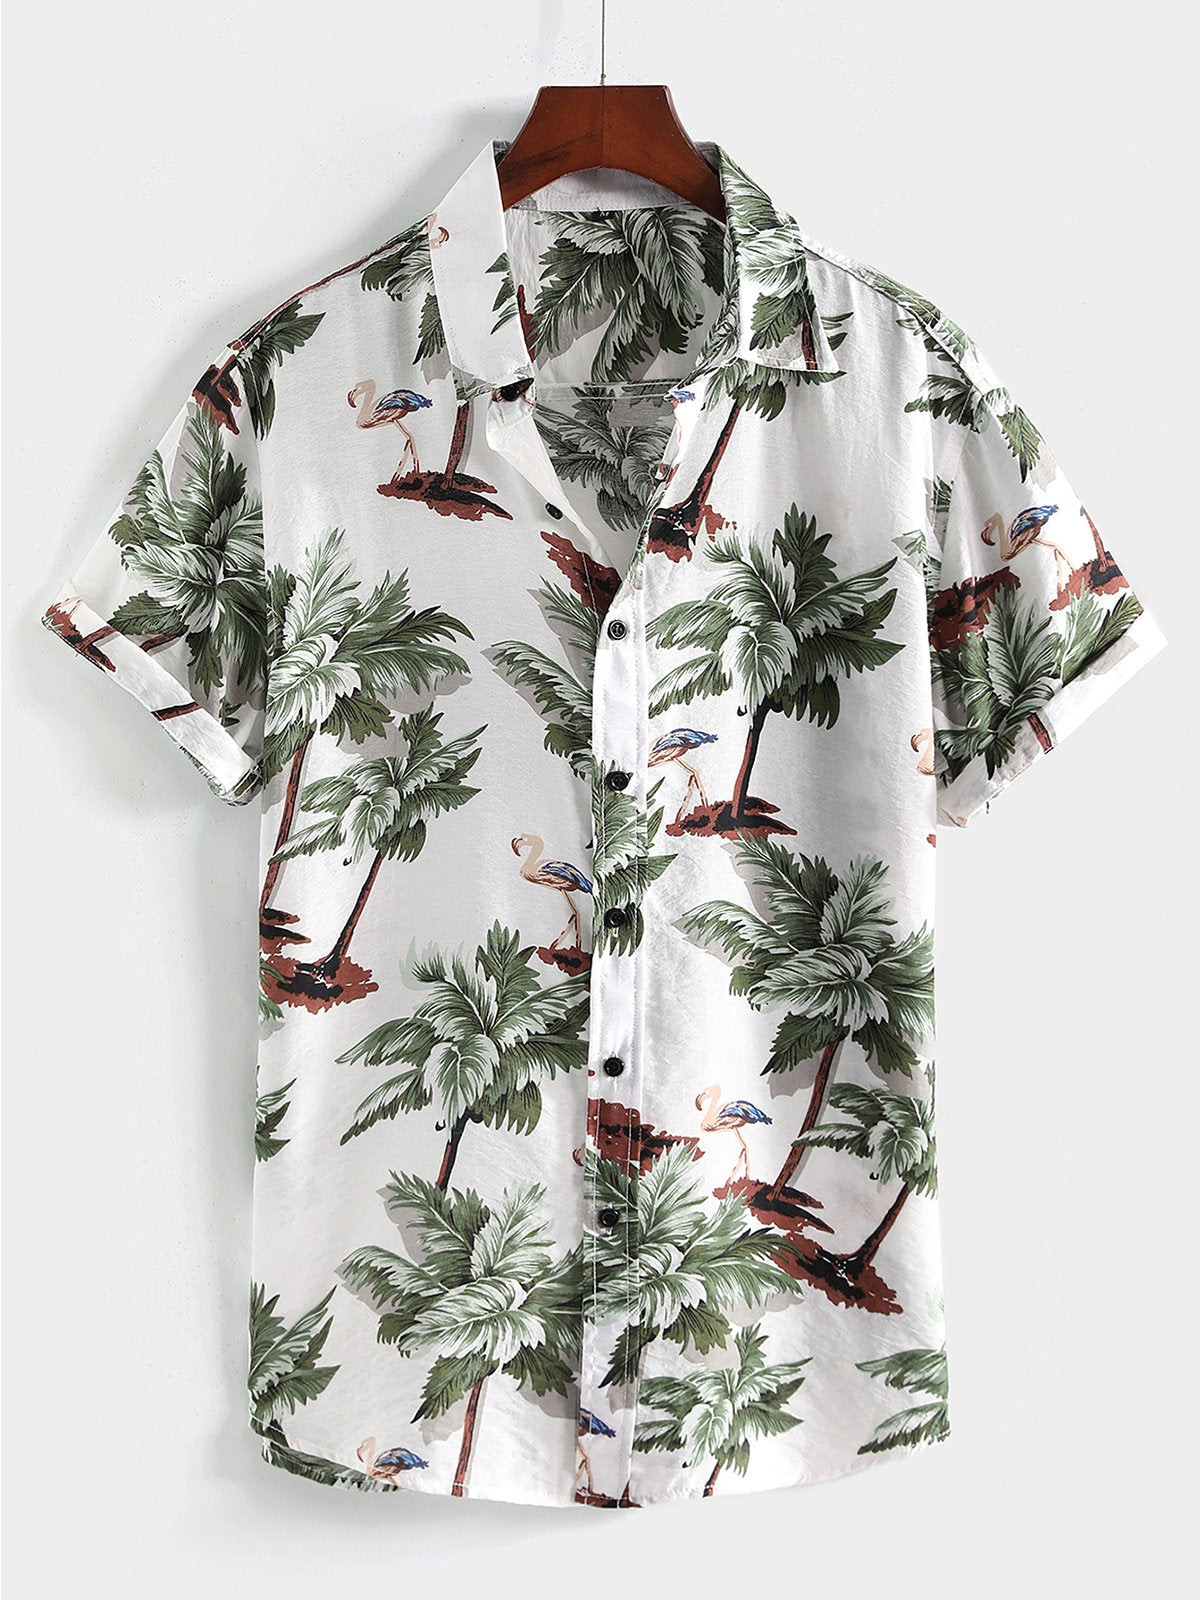 Mens Floral Printed Holiday Cotton Shirt Hawaiian Shirt for Men Women